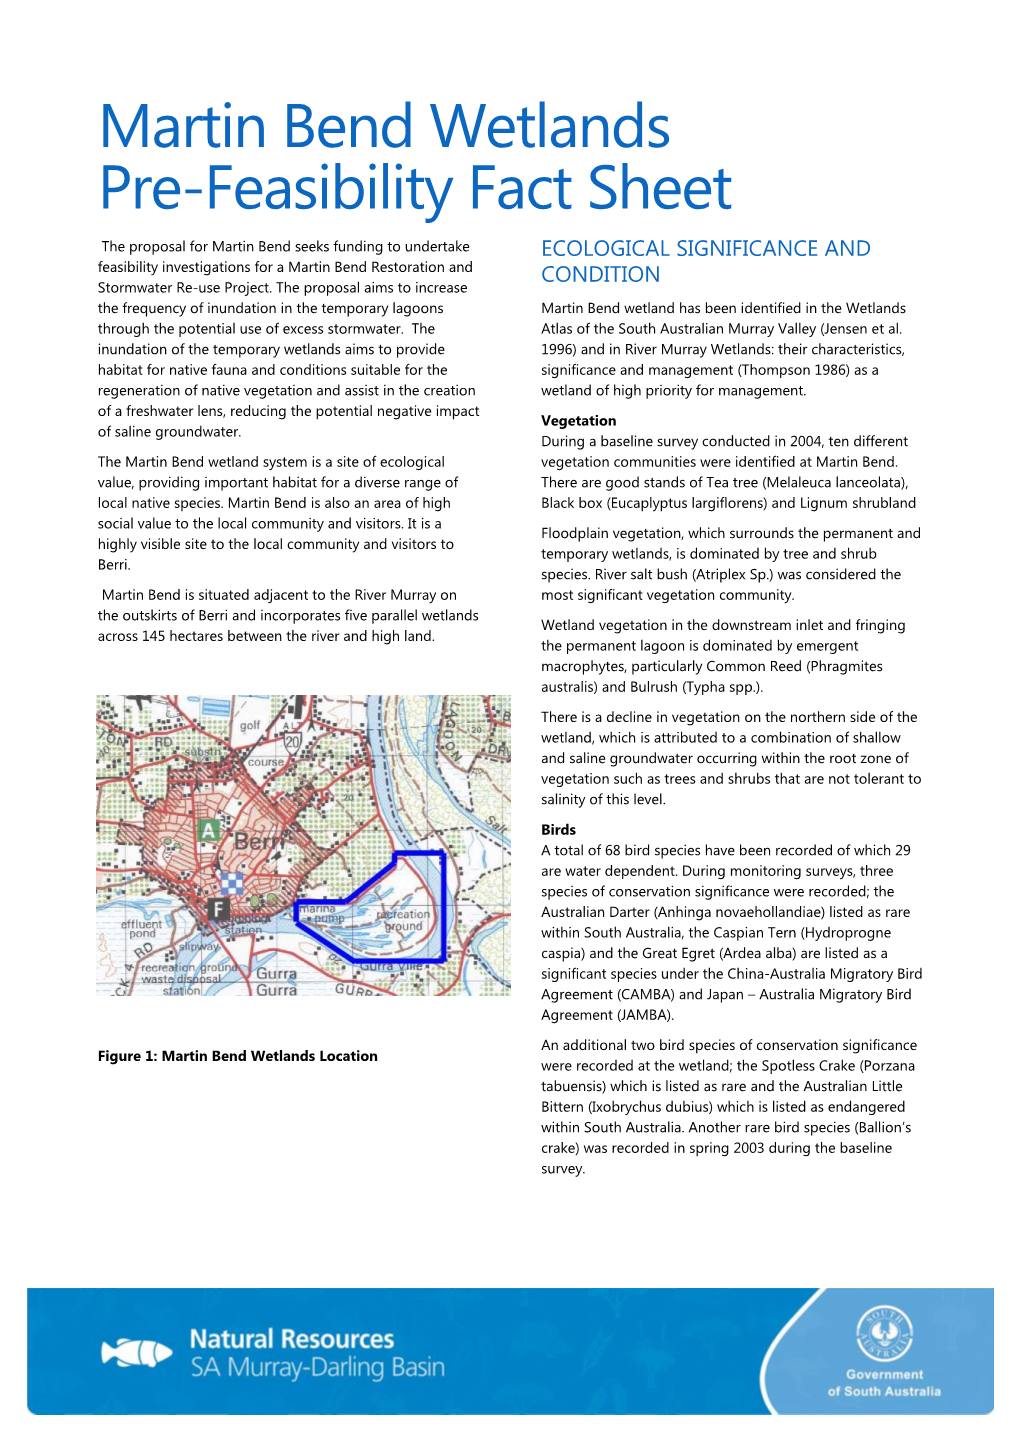 Martin Bend Wetlands Pre-Feasibility Fact Sheet